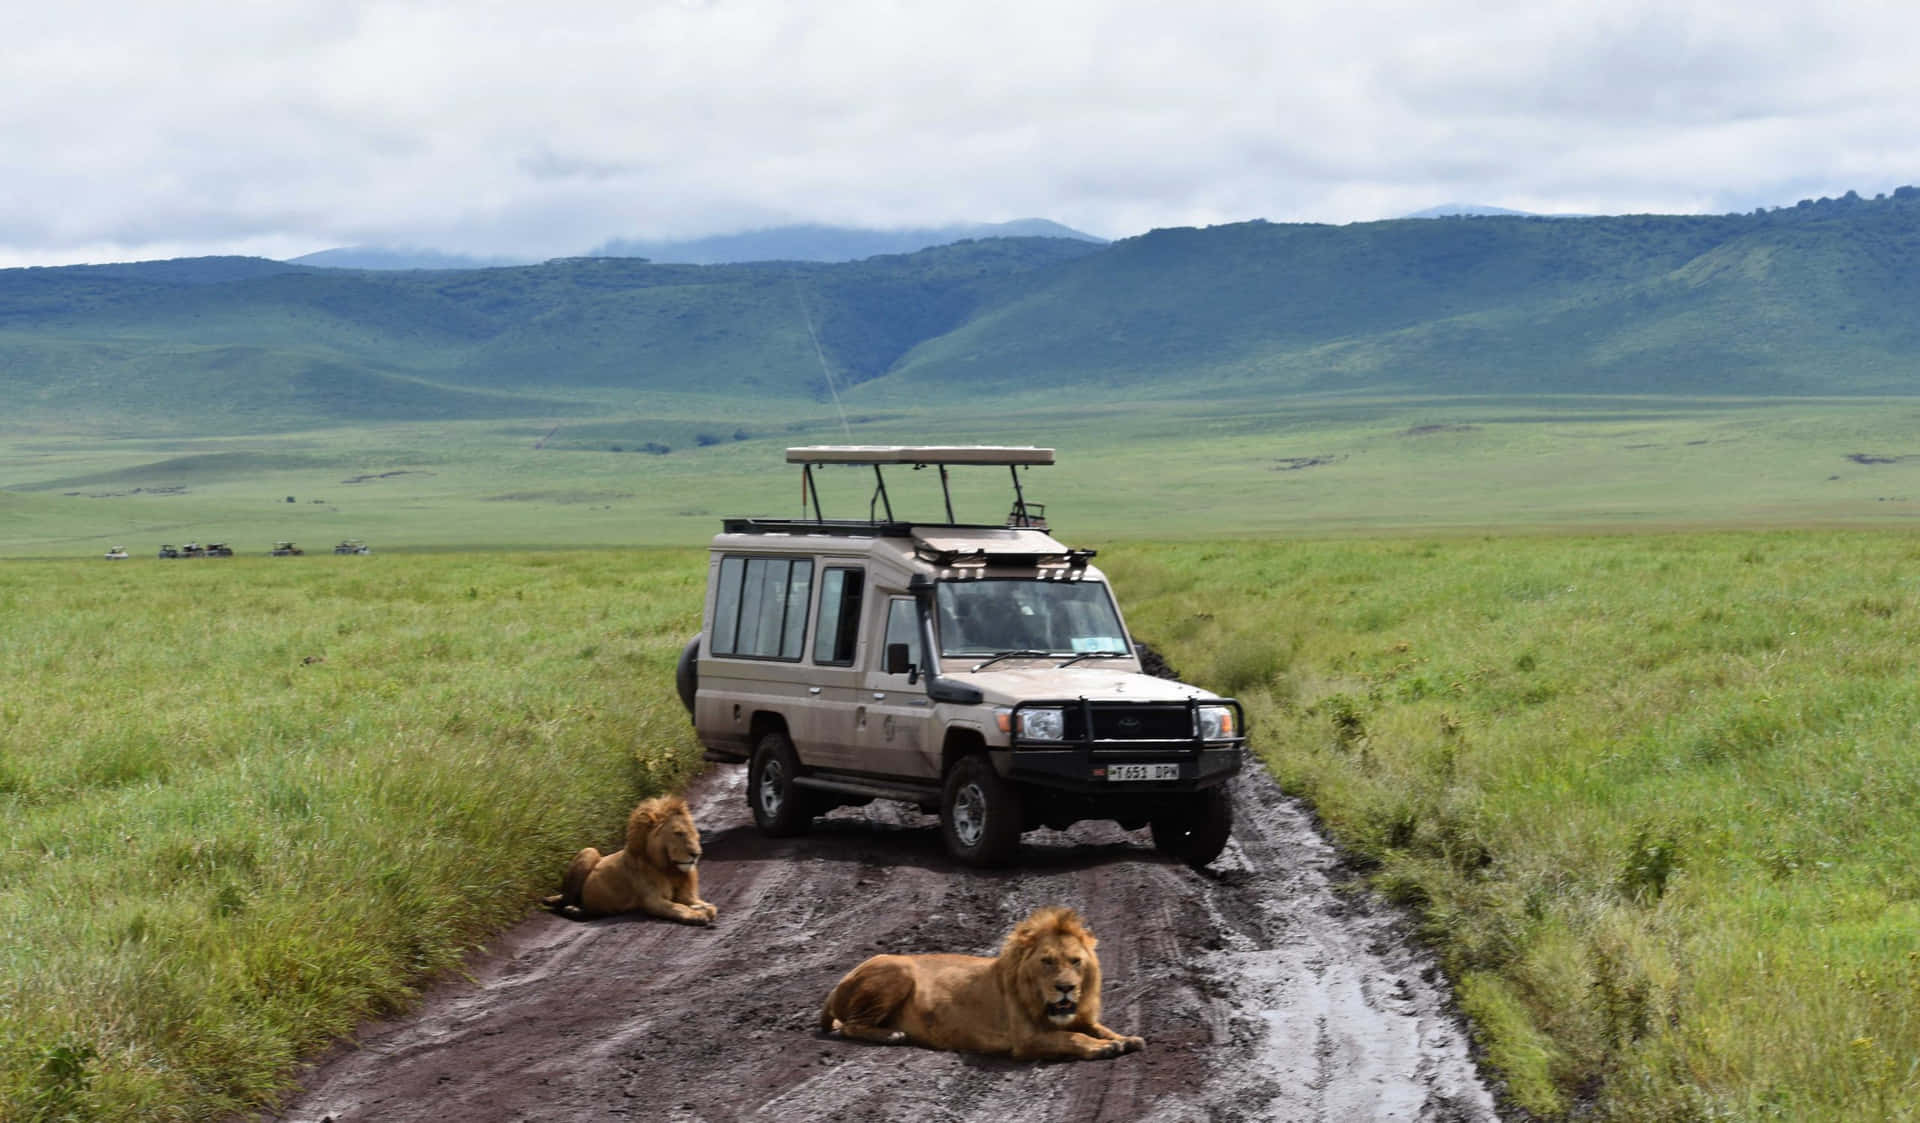 Ngorongoro-krateret 2560 X 1497 Wallpaper